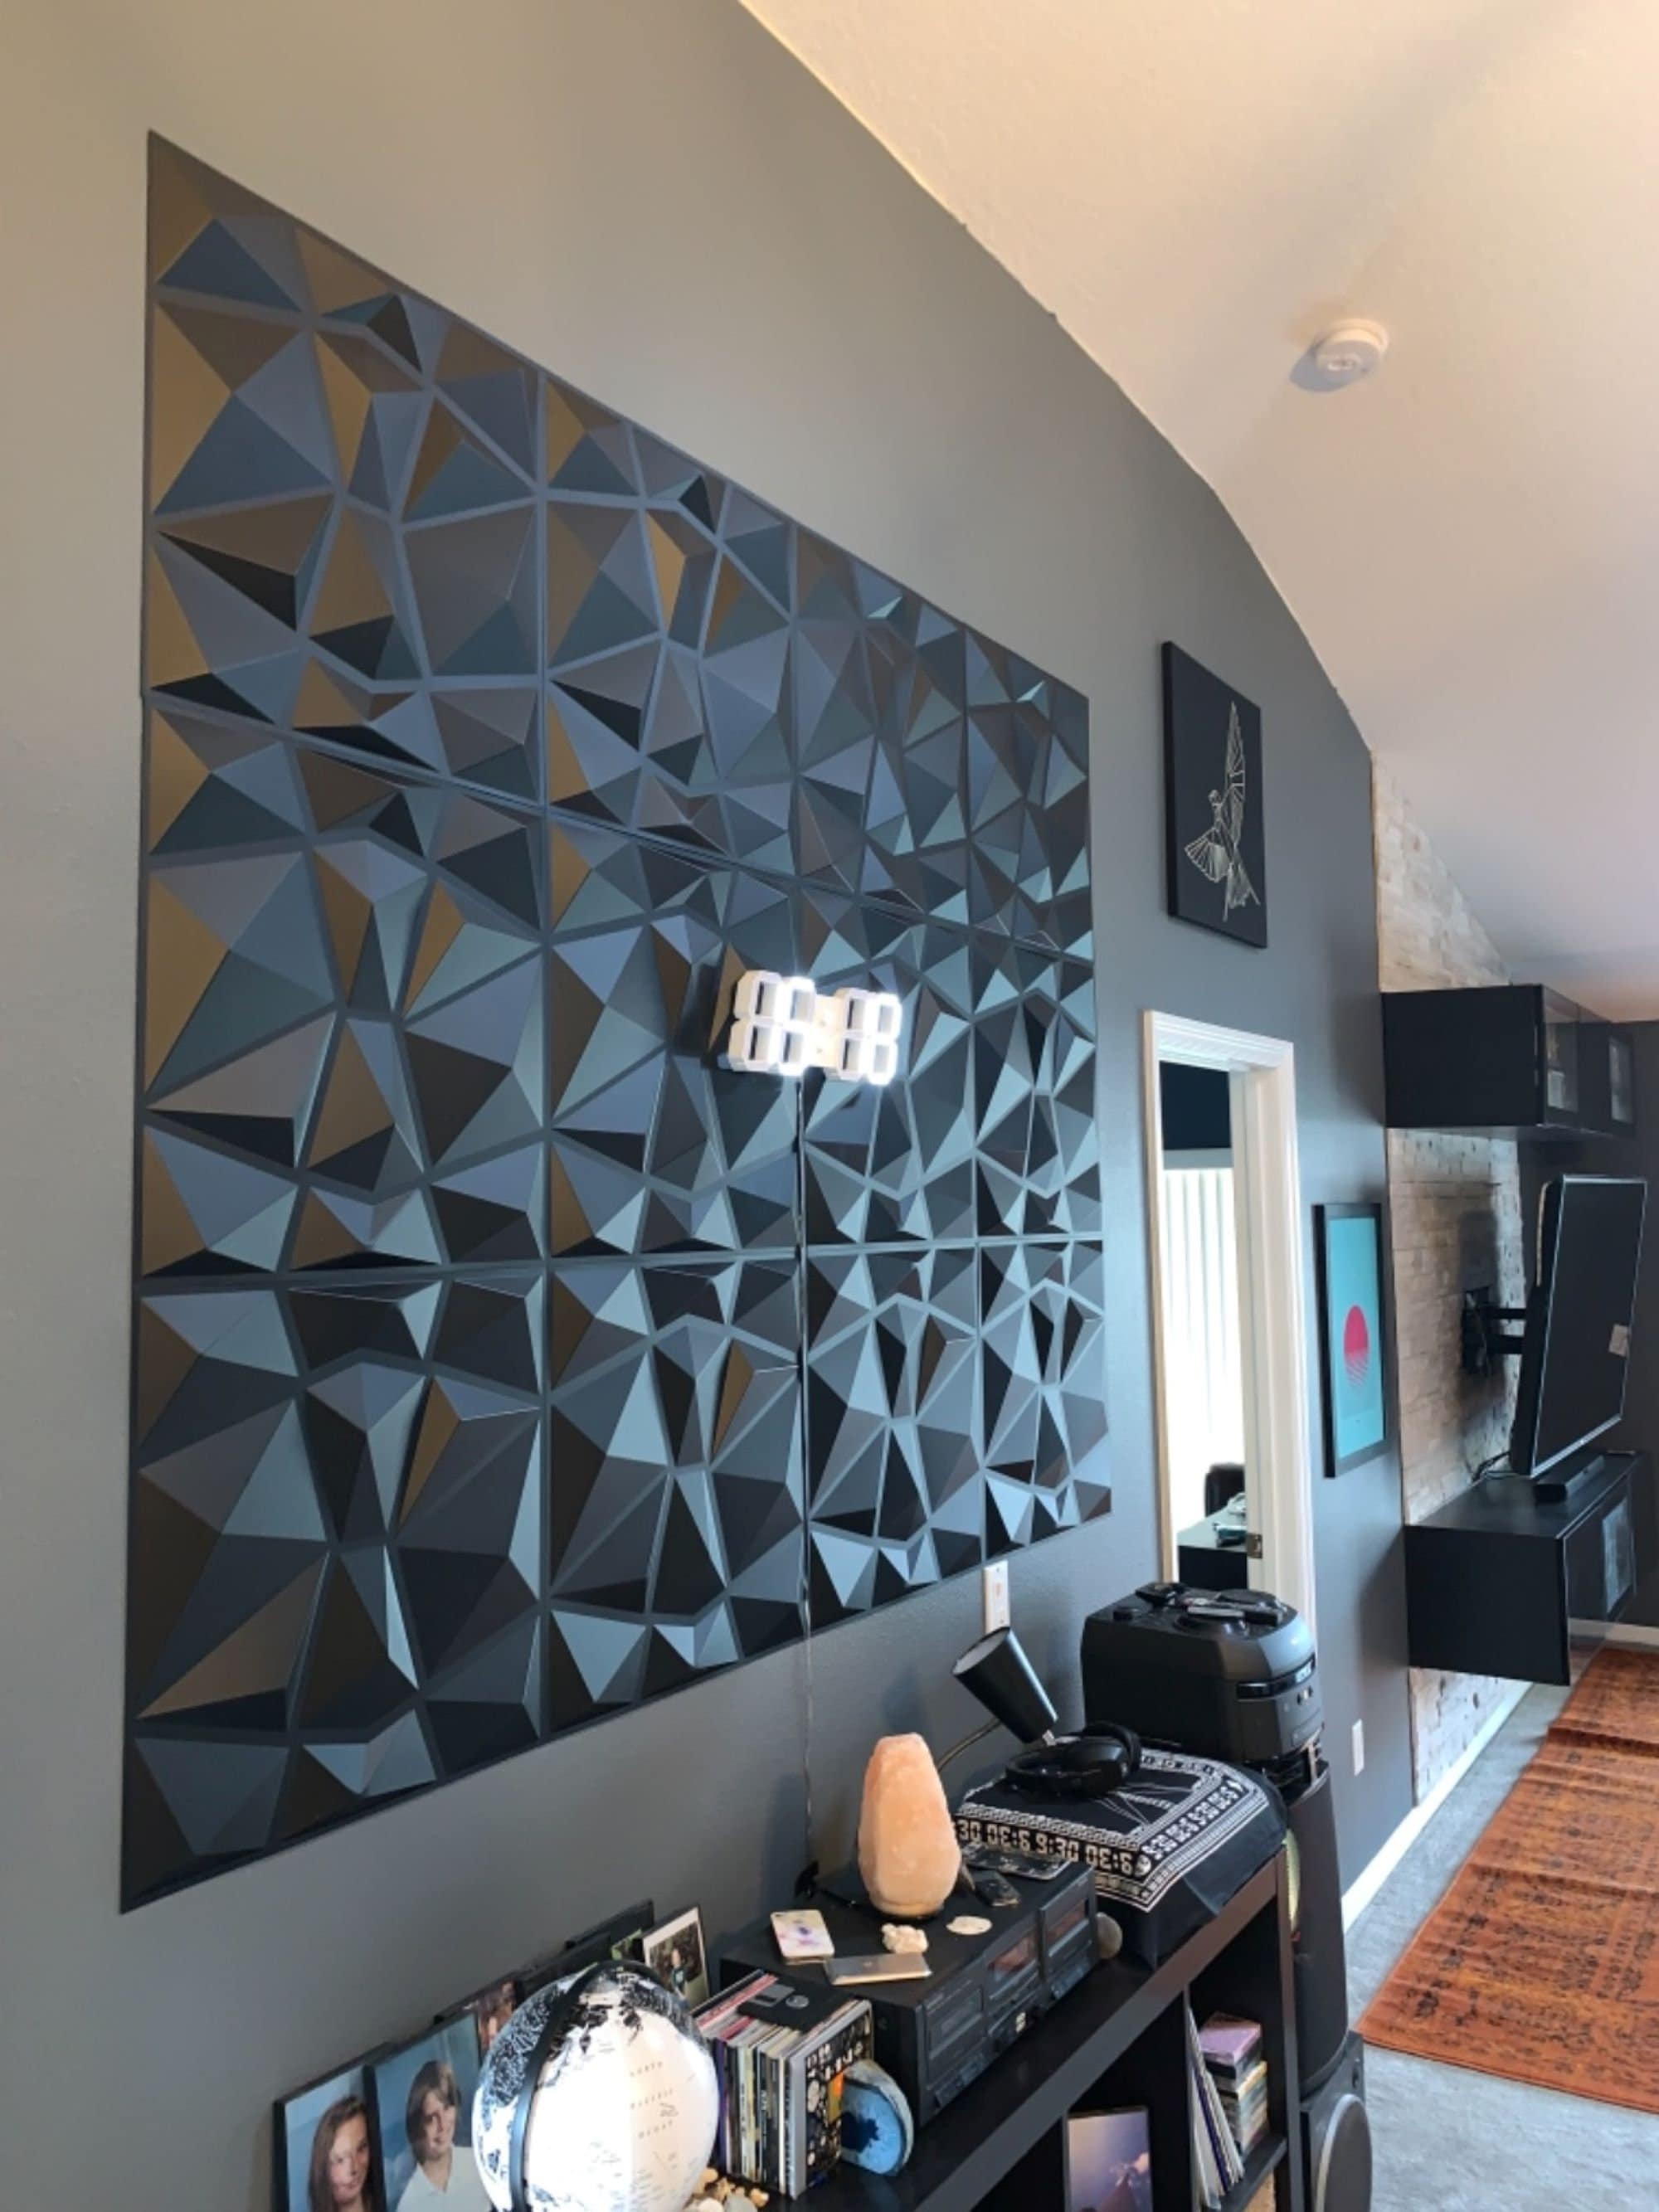  Art3d Paneles decorativos de pared 3D de PVC con